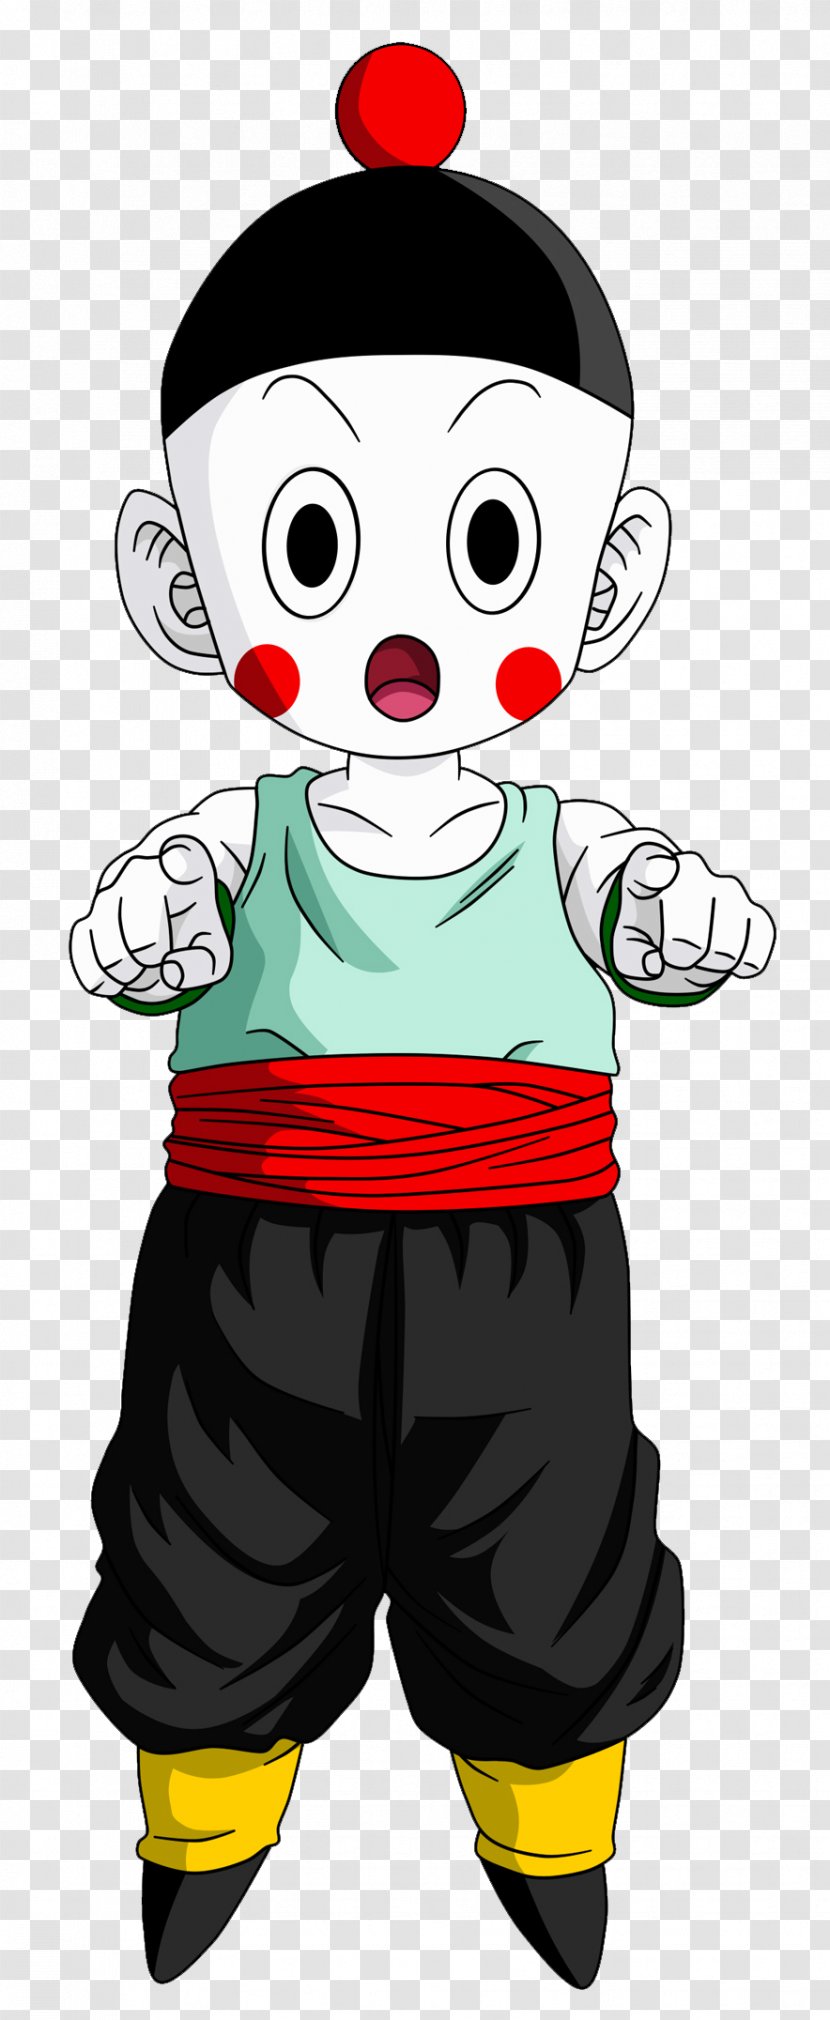 Chiaotzu Goku Tien Shinhan Majin Buu Gohan - Character Transparent PNG